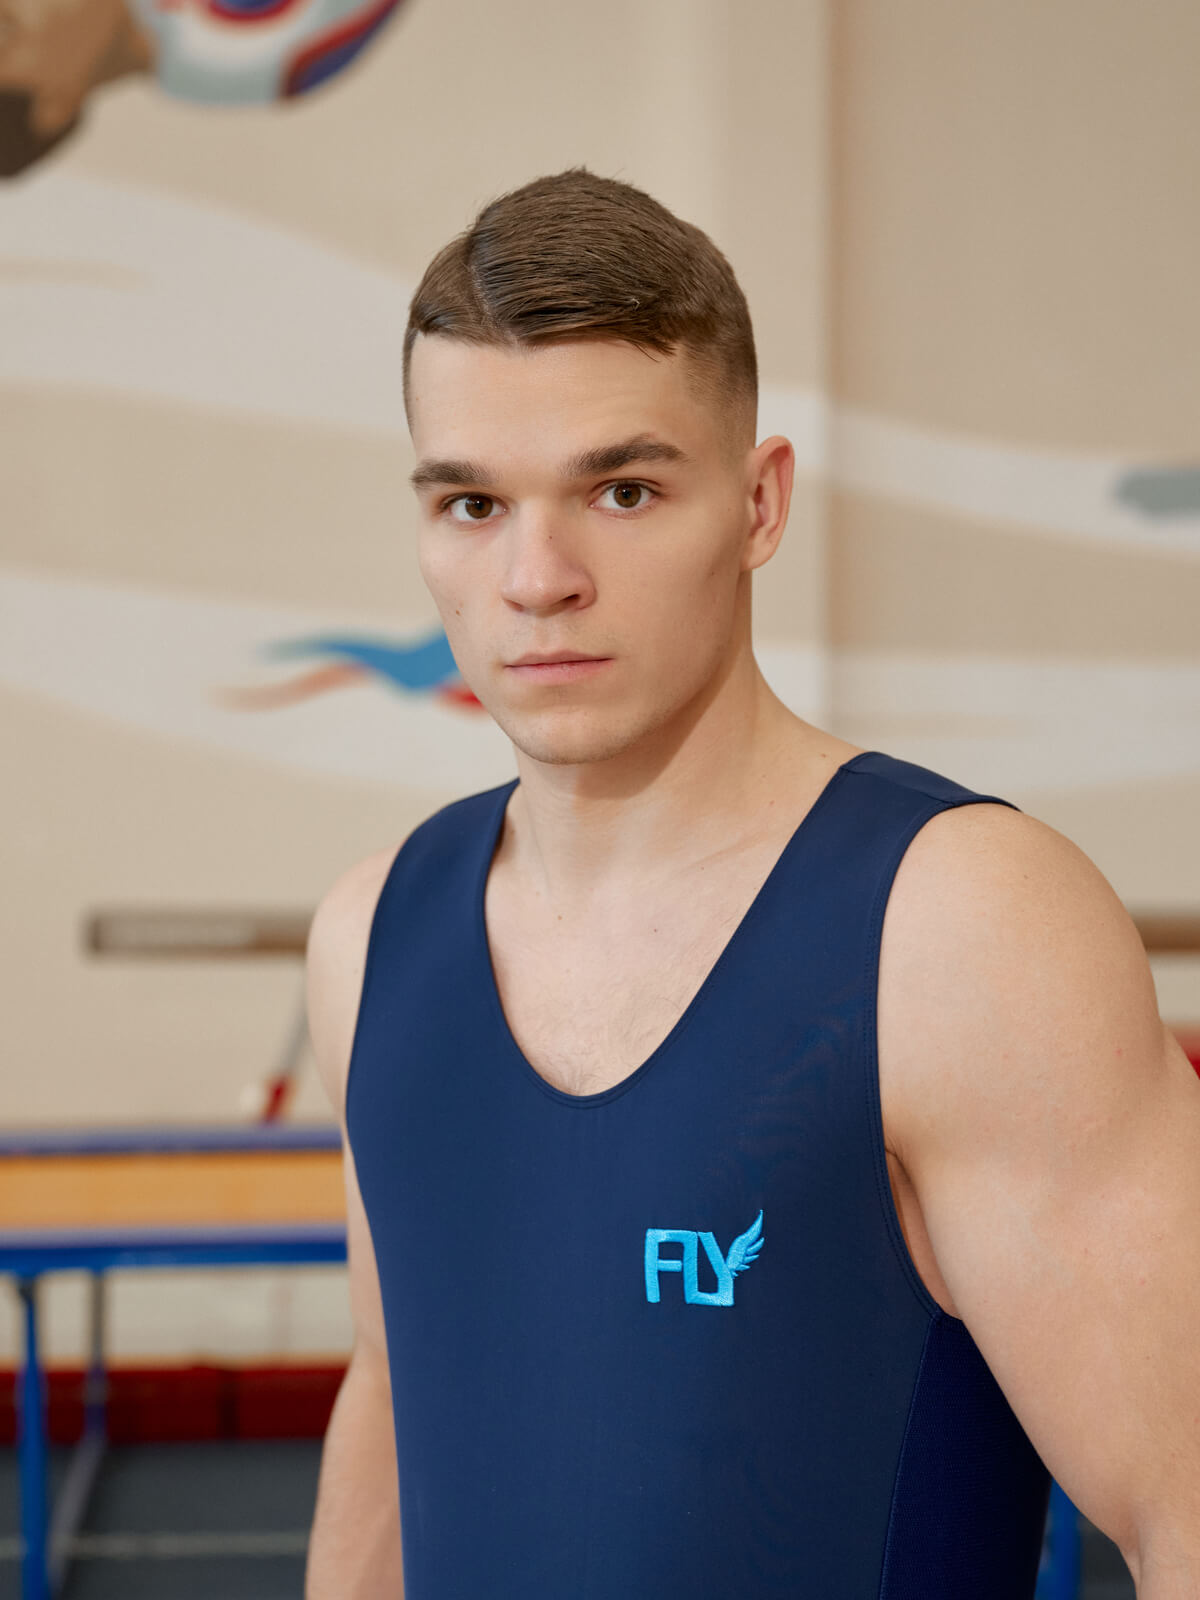 Купить одежду для спортивной гимнастики – Fly